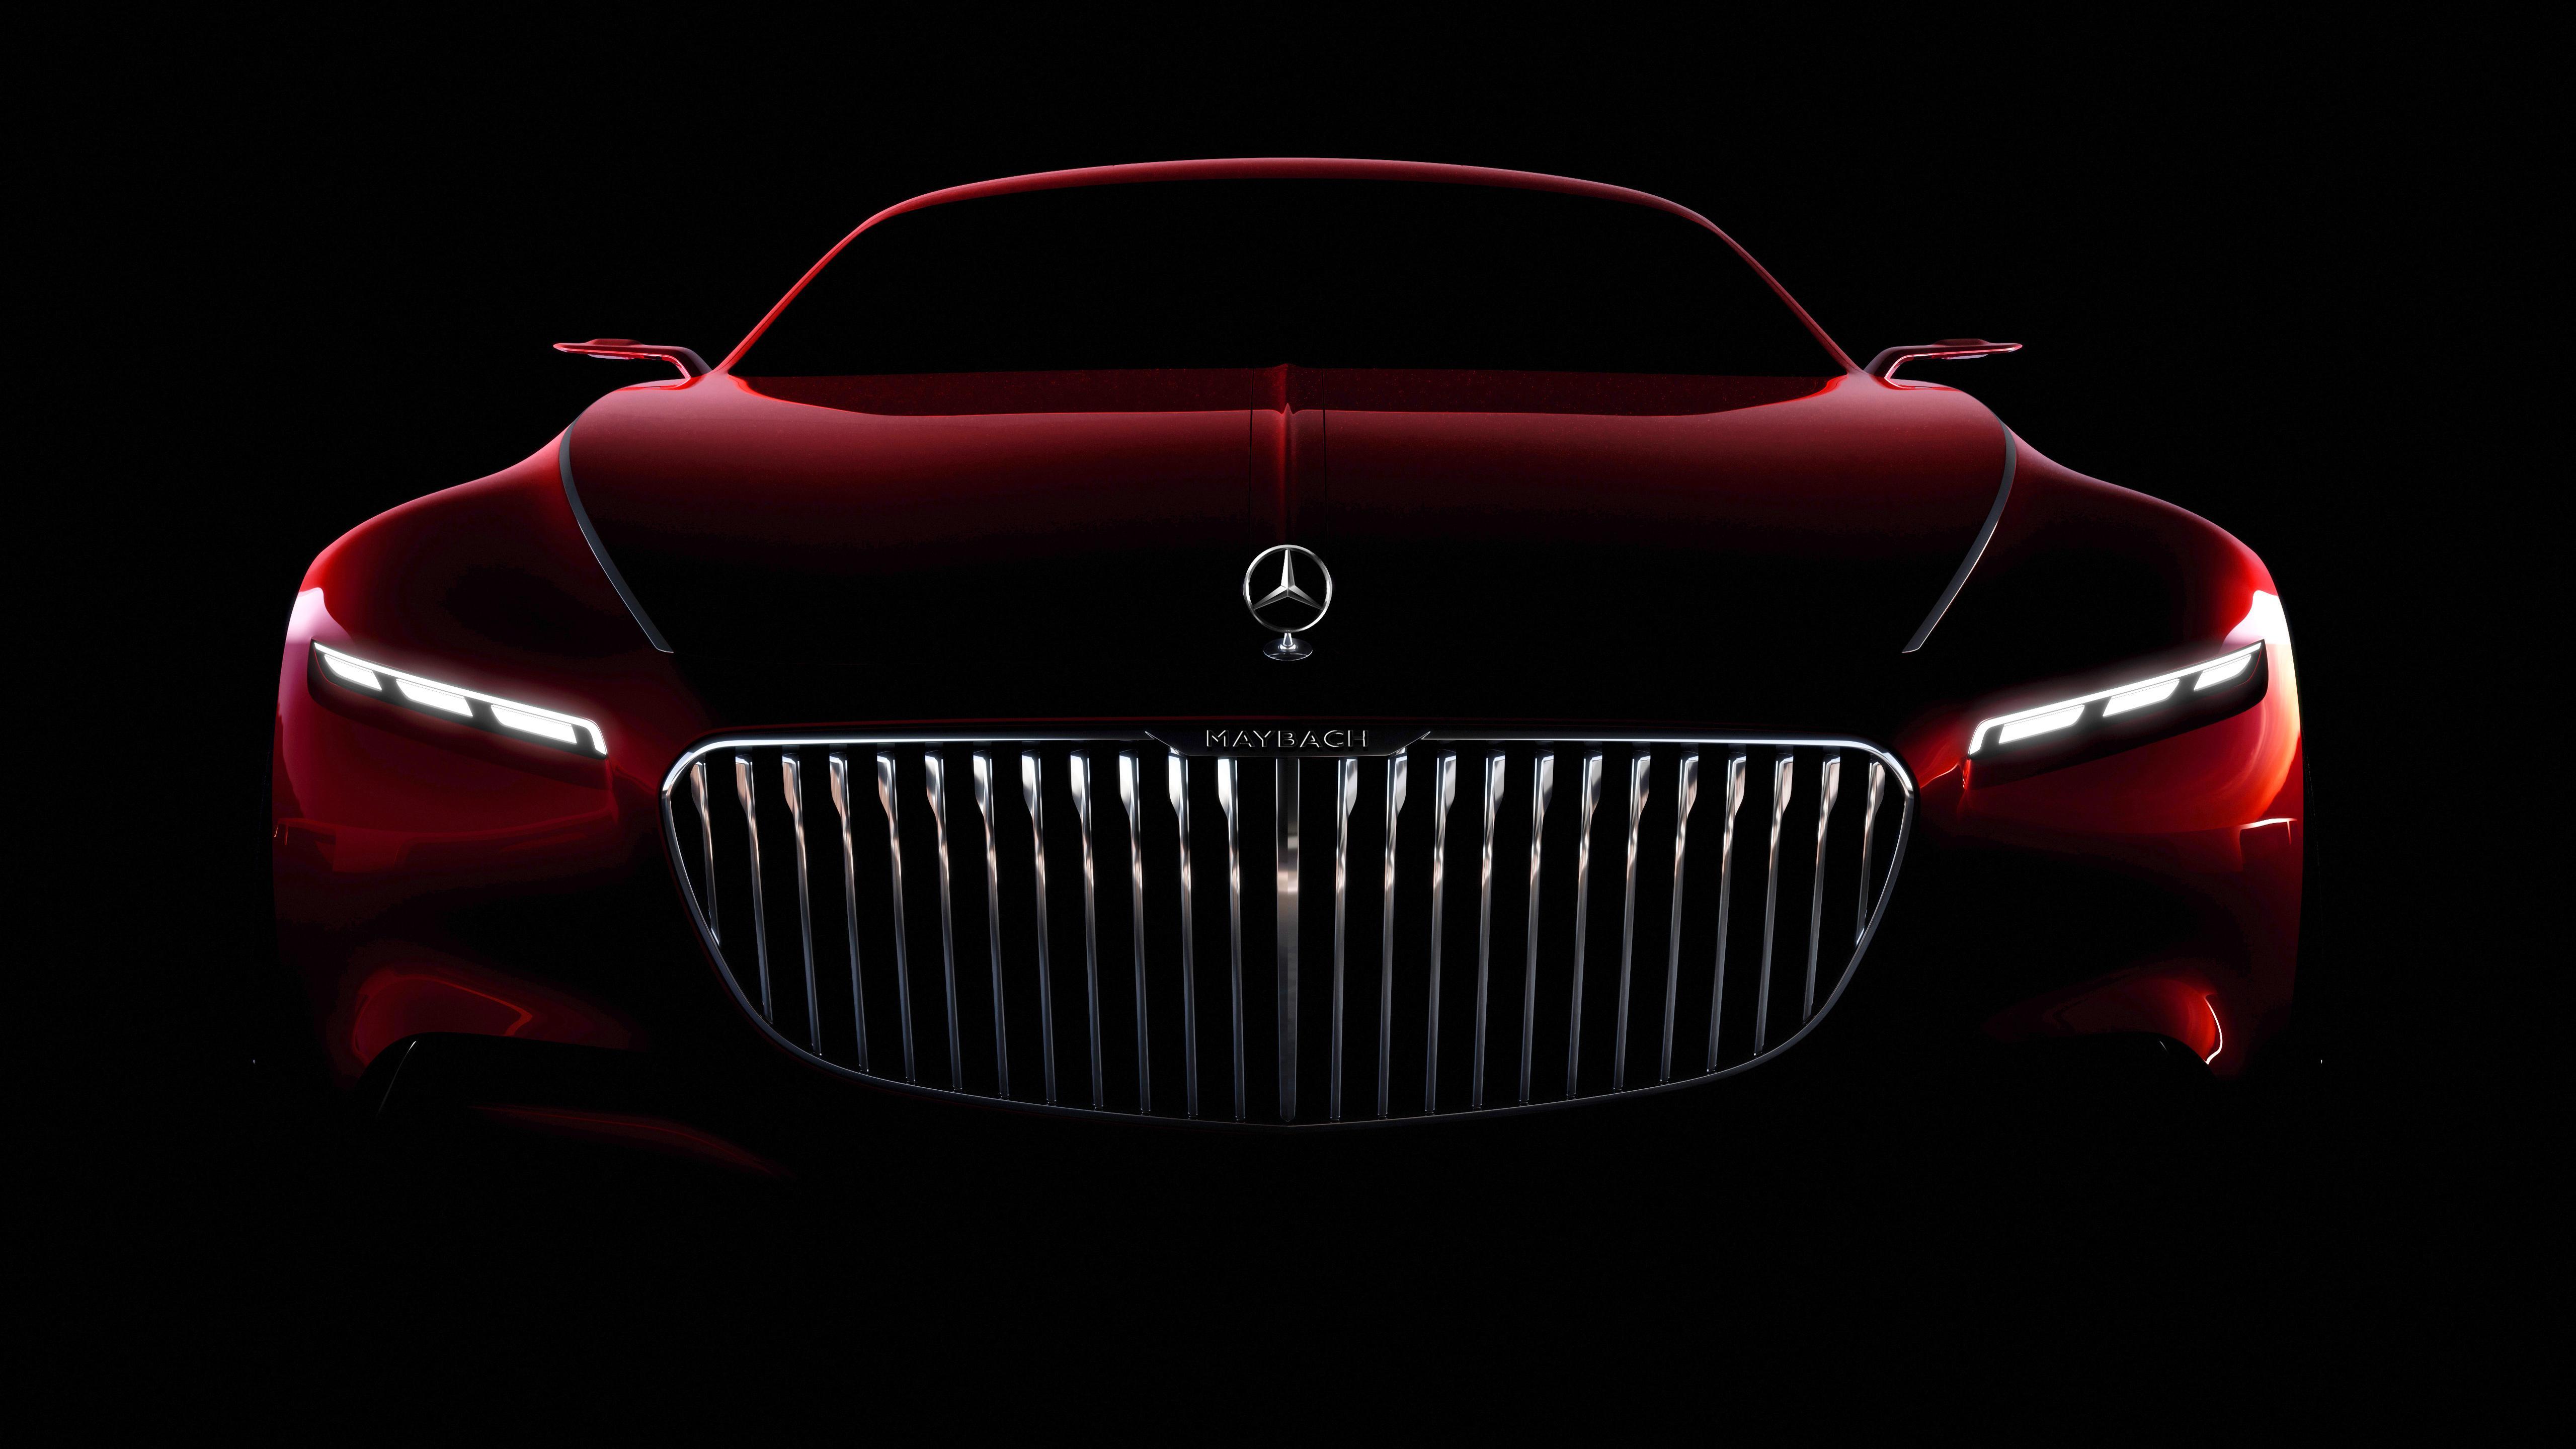 Mercedes Benz Wallpapers  Top 35 Best Mercedes Benz Backgrounds Download